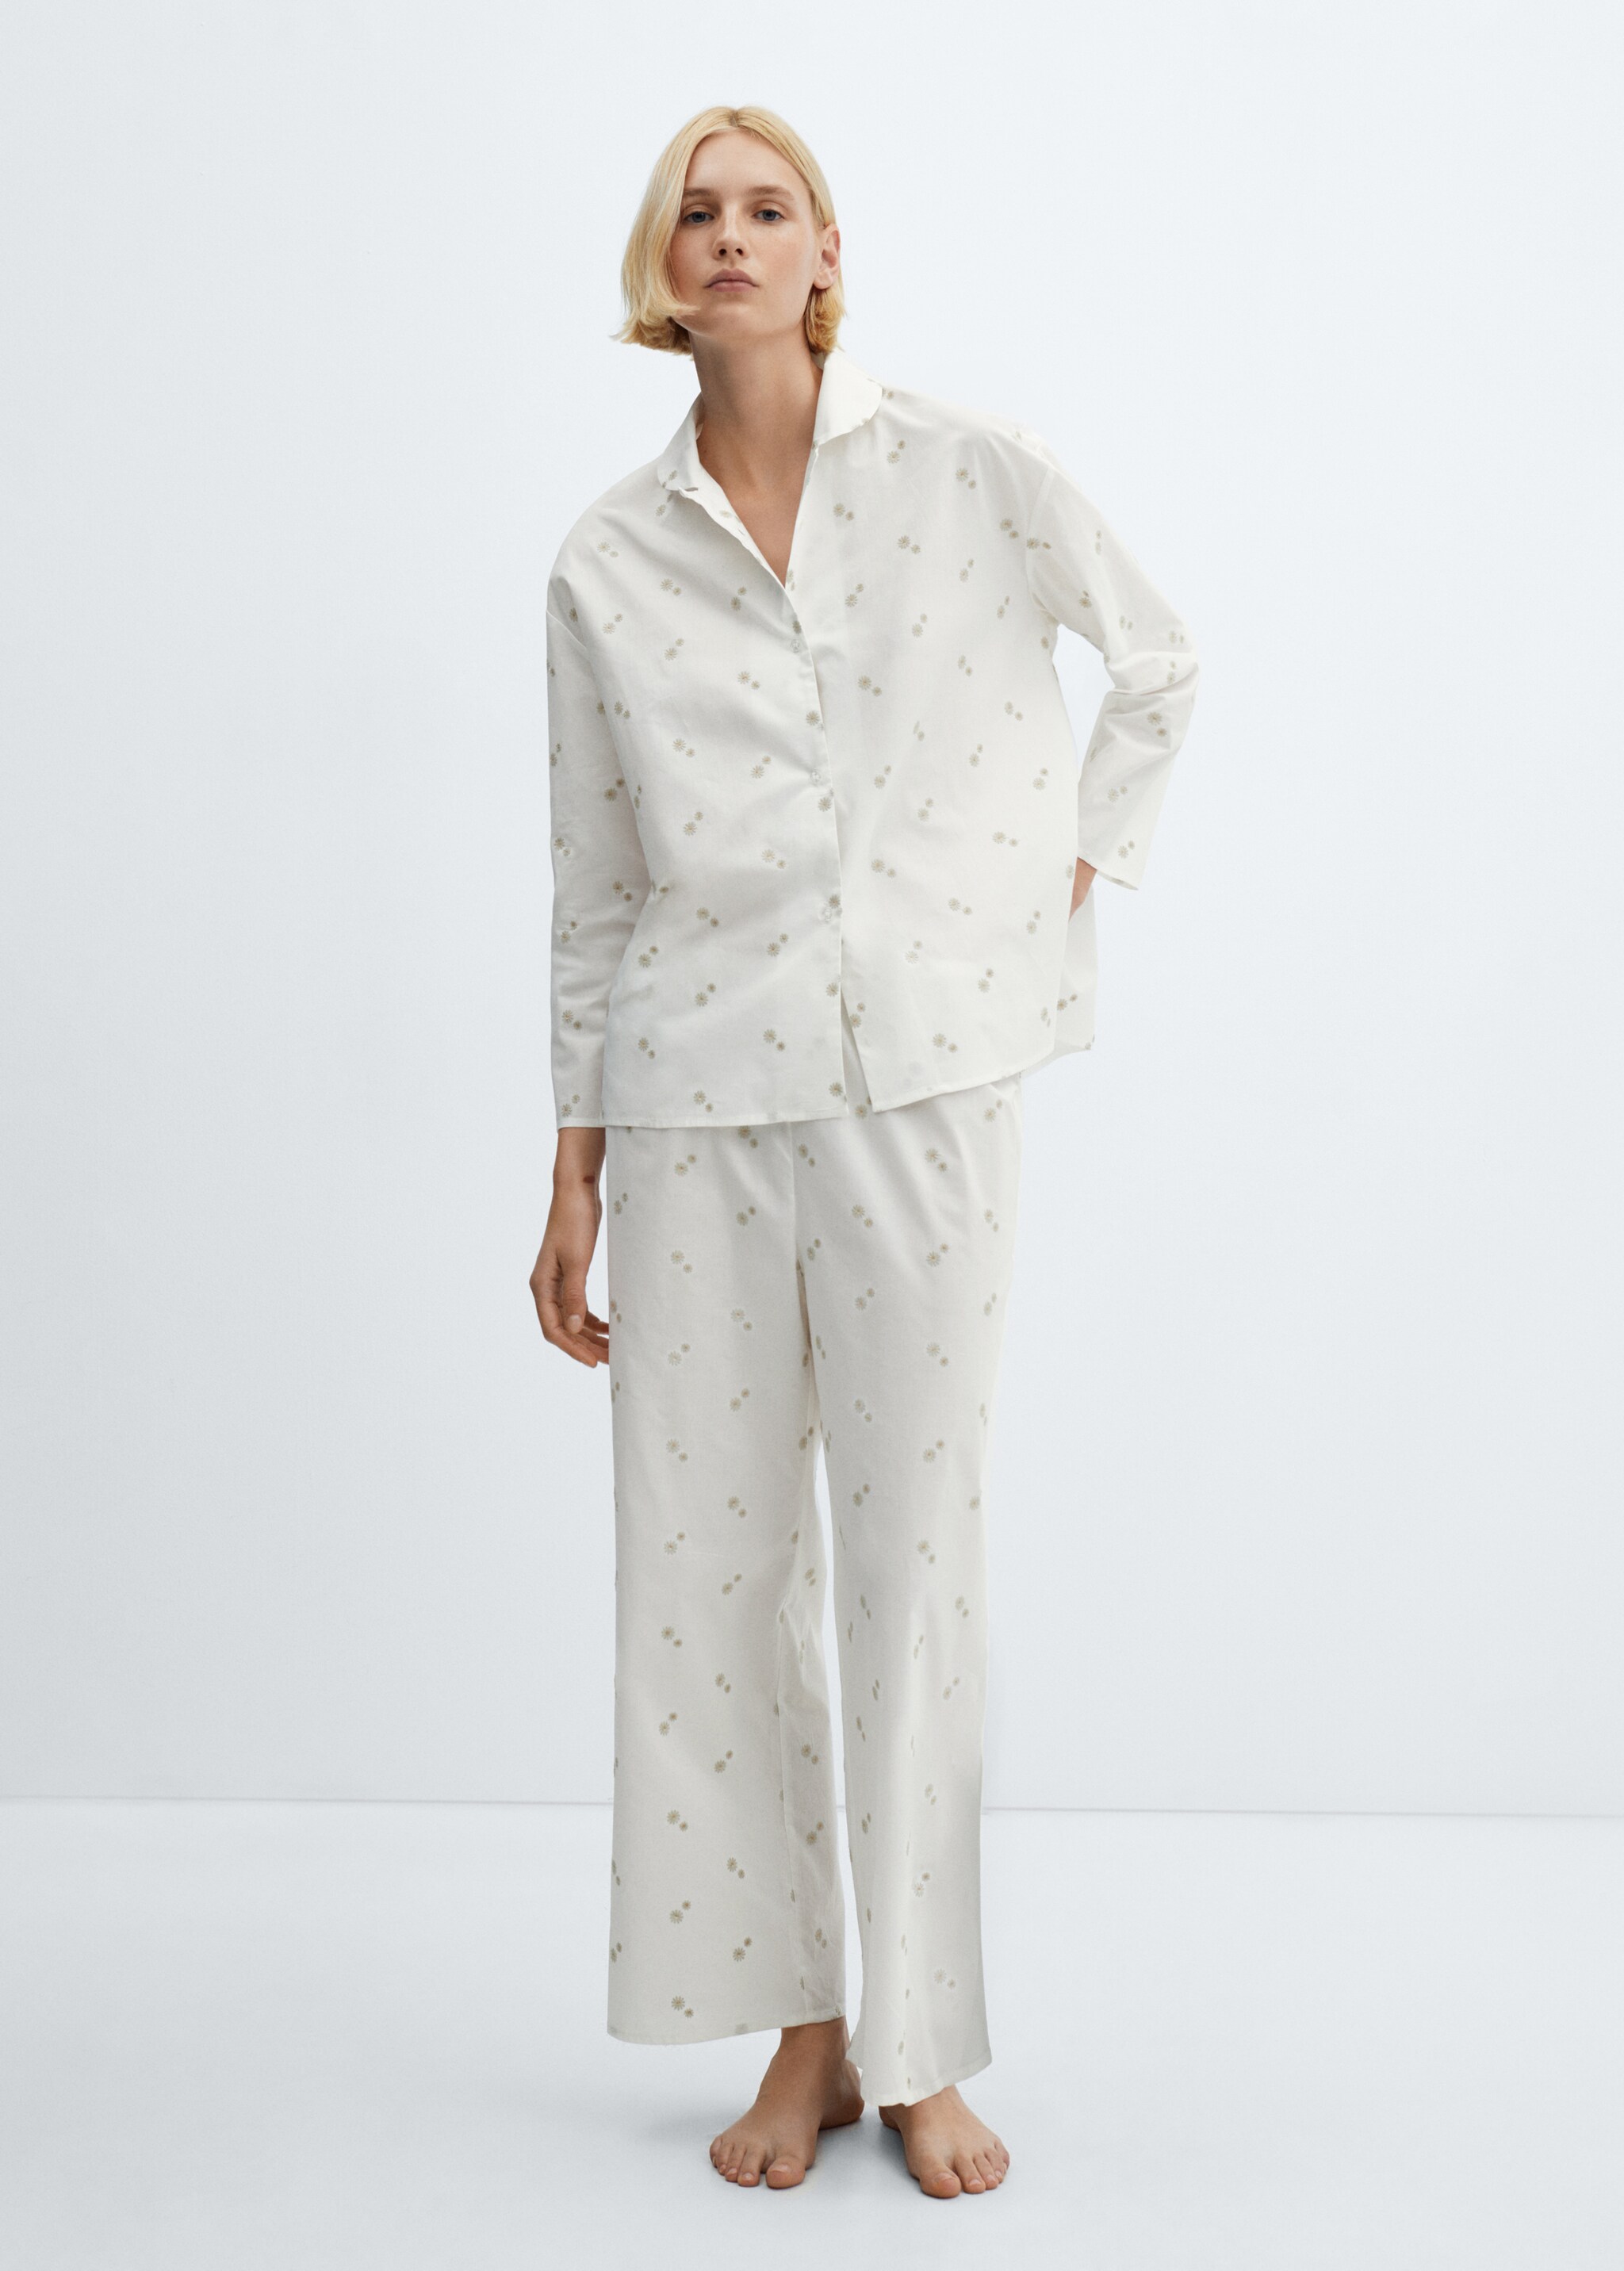 Chemise pyjama coton broderie florale - Plan général